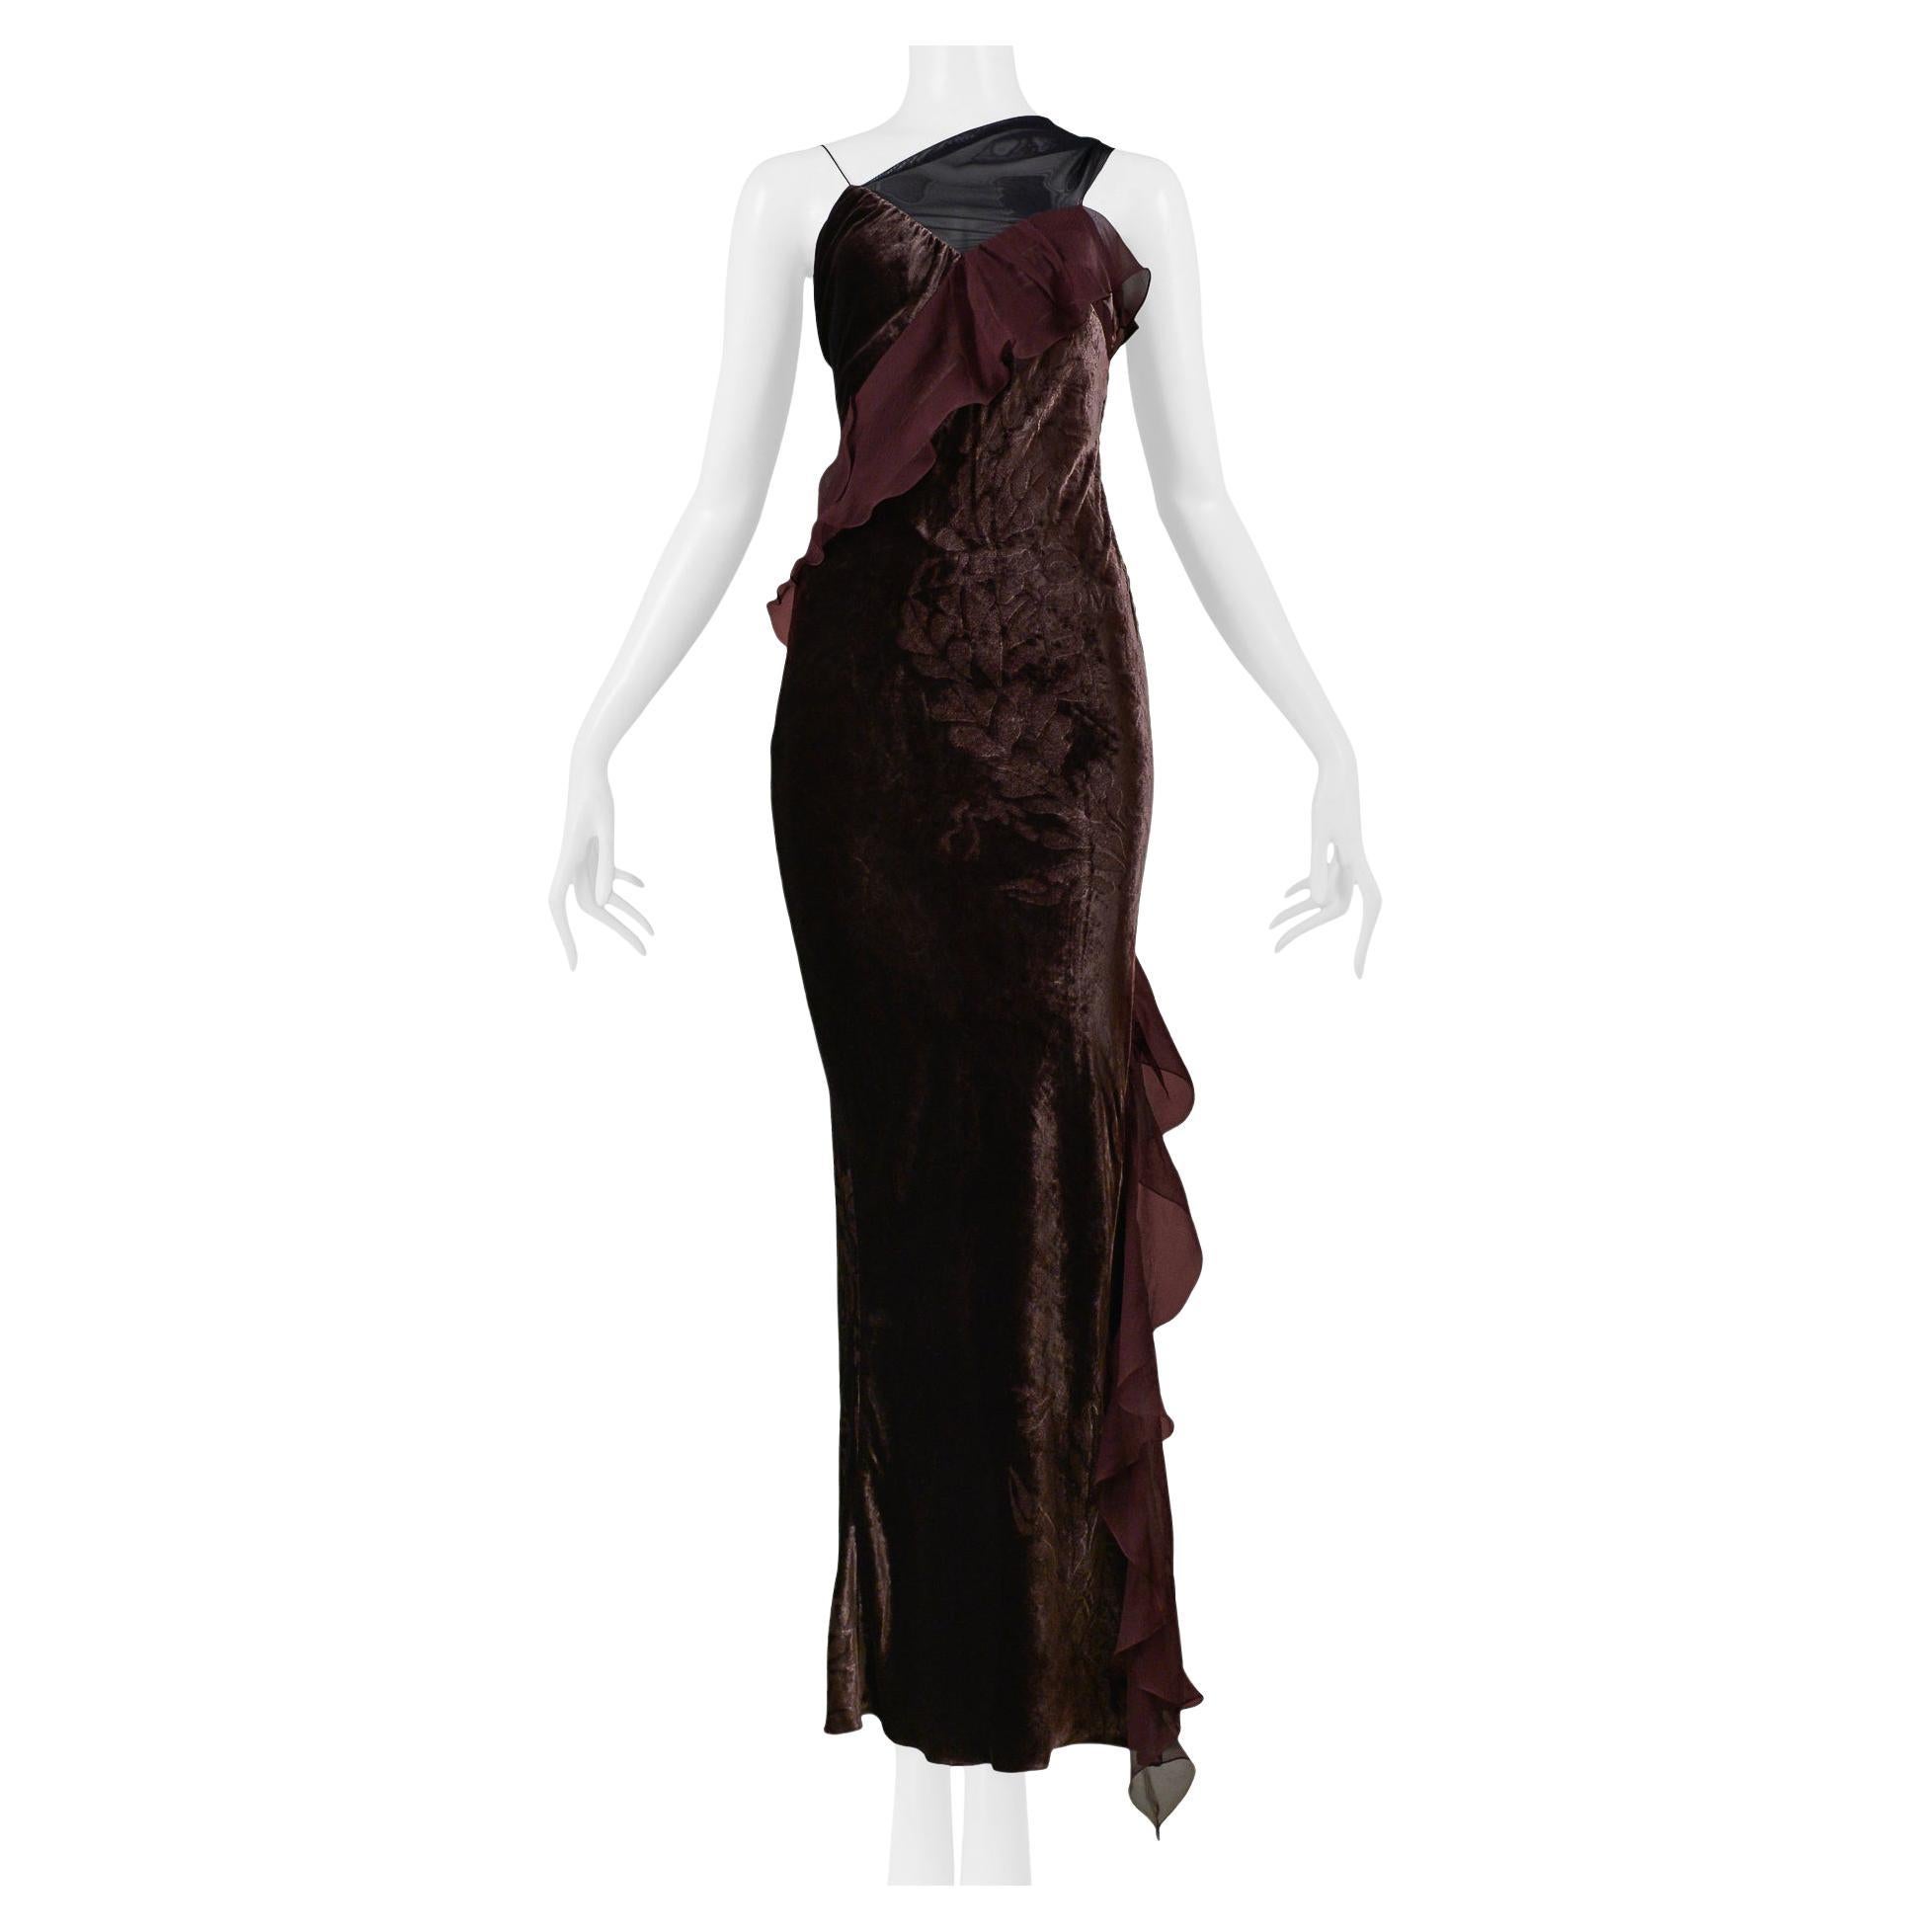 Velvet Gowns - 643 For Sale on 1stDibs | vintage velvet gown 